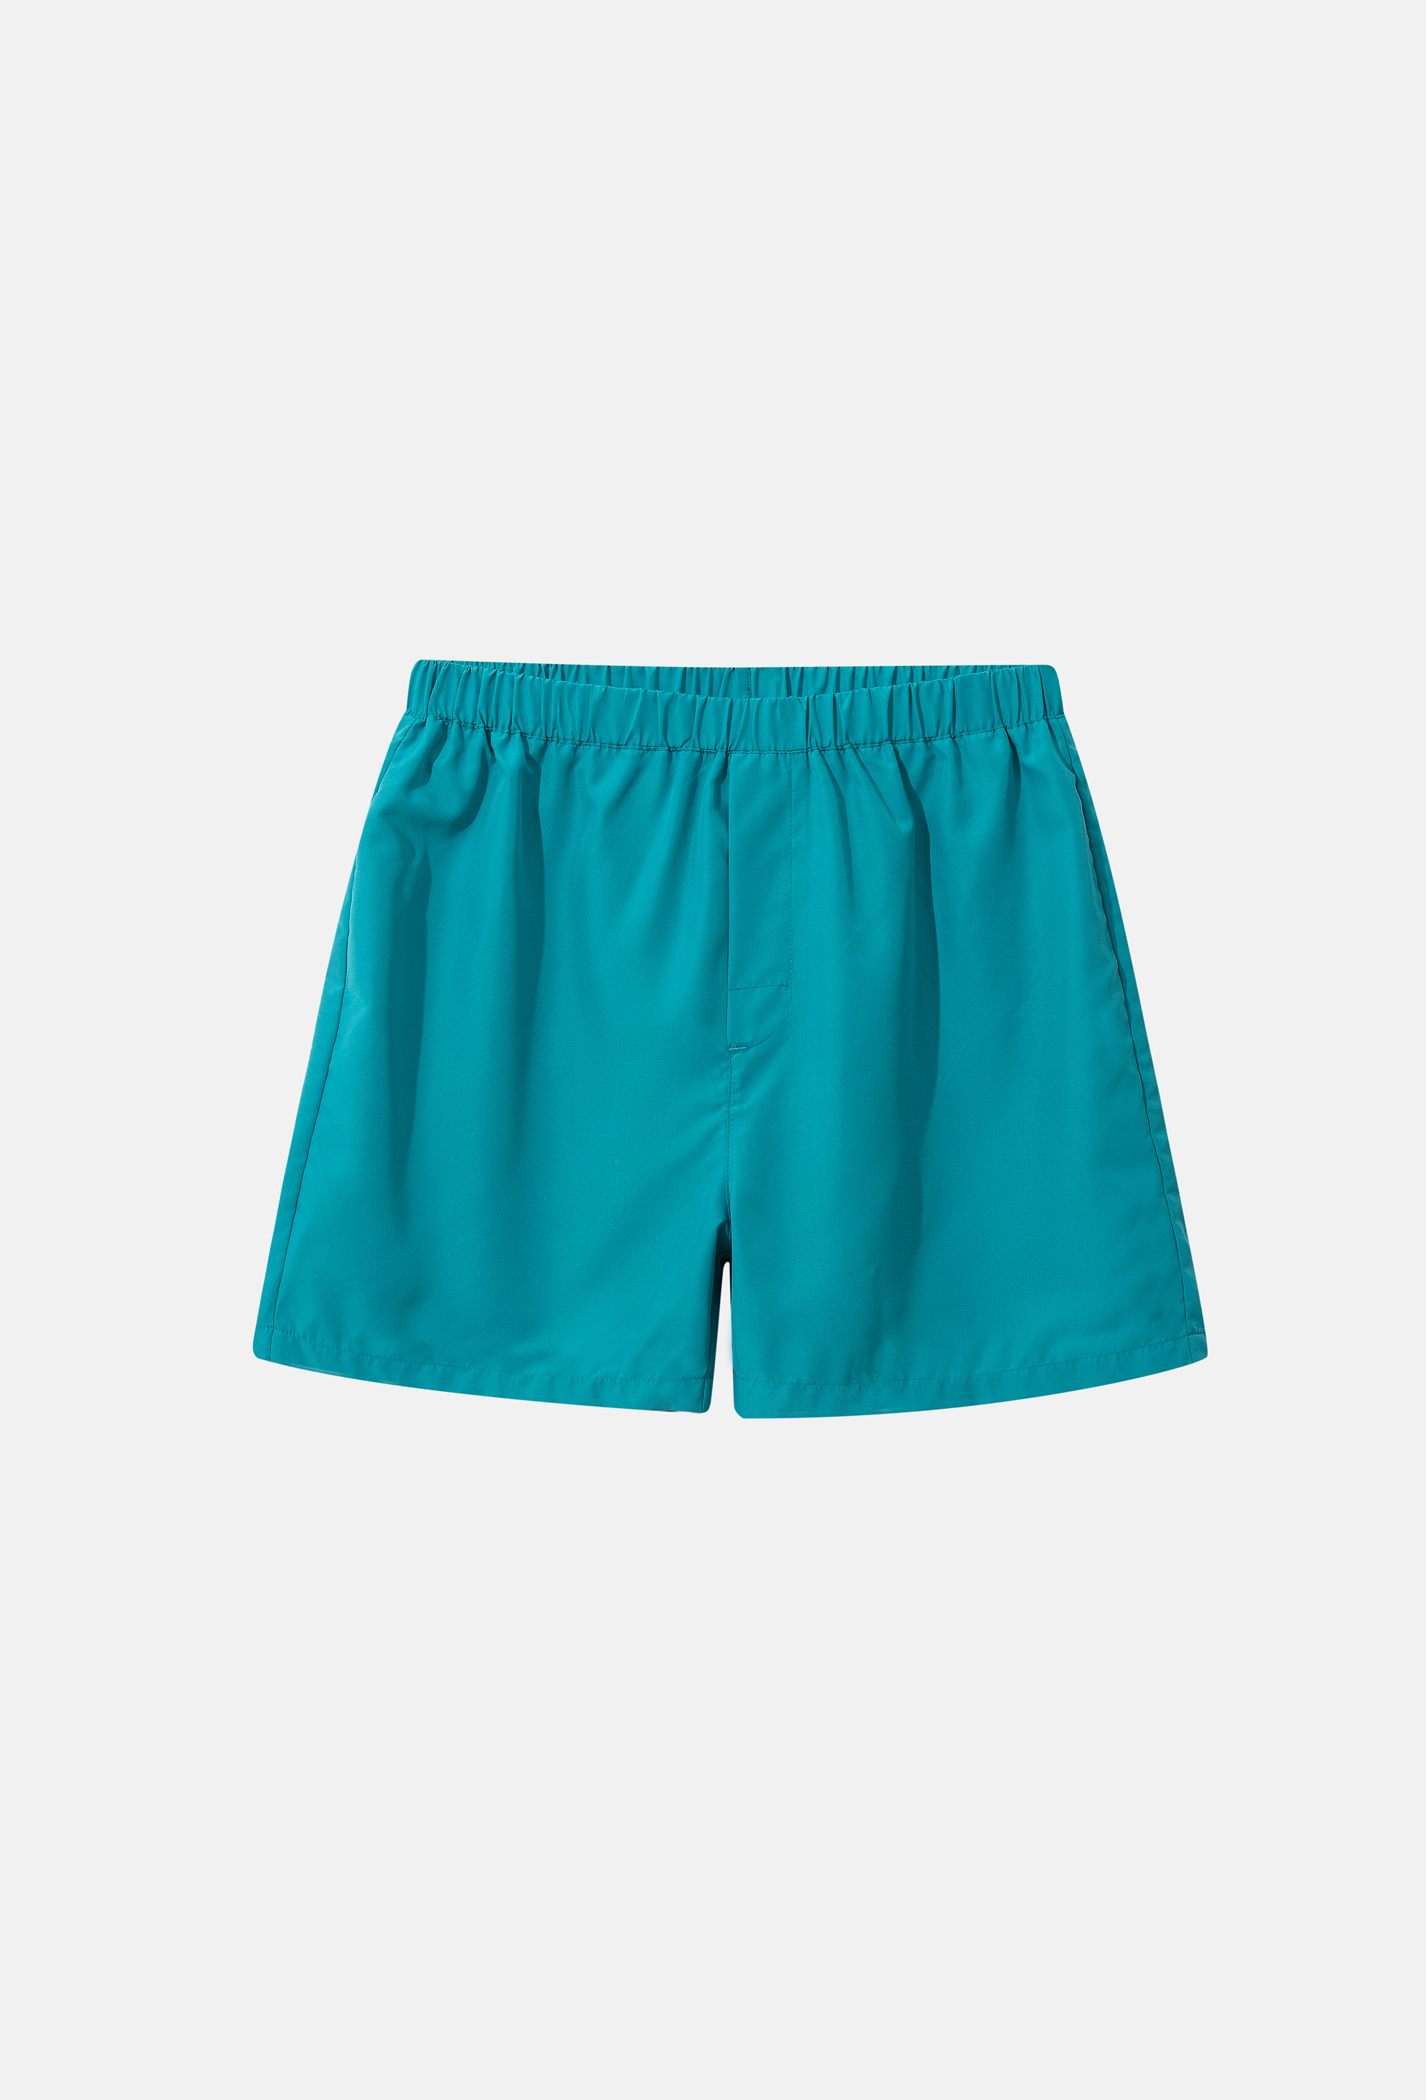 FLASH SALE - Quần Shorts mặc nhà Coolmate Basics  Xanh ngọc